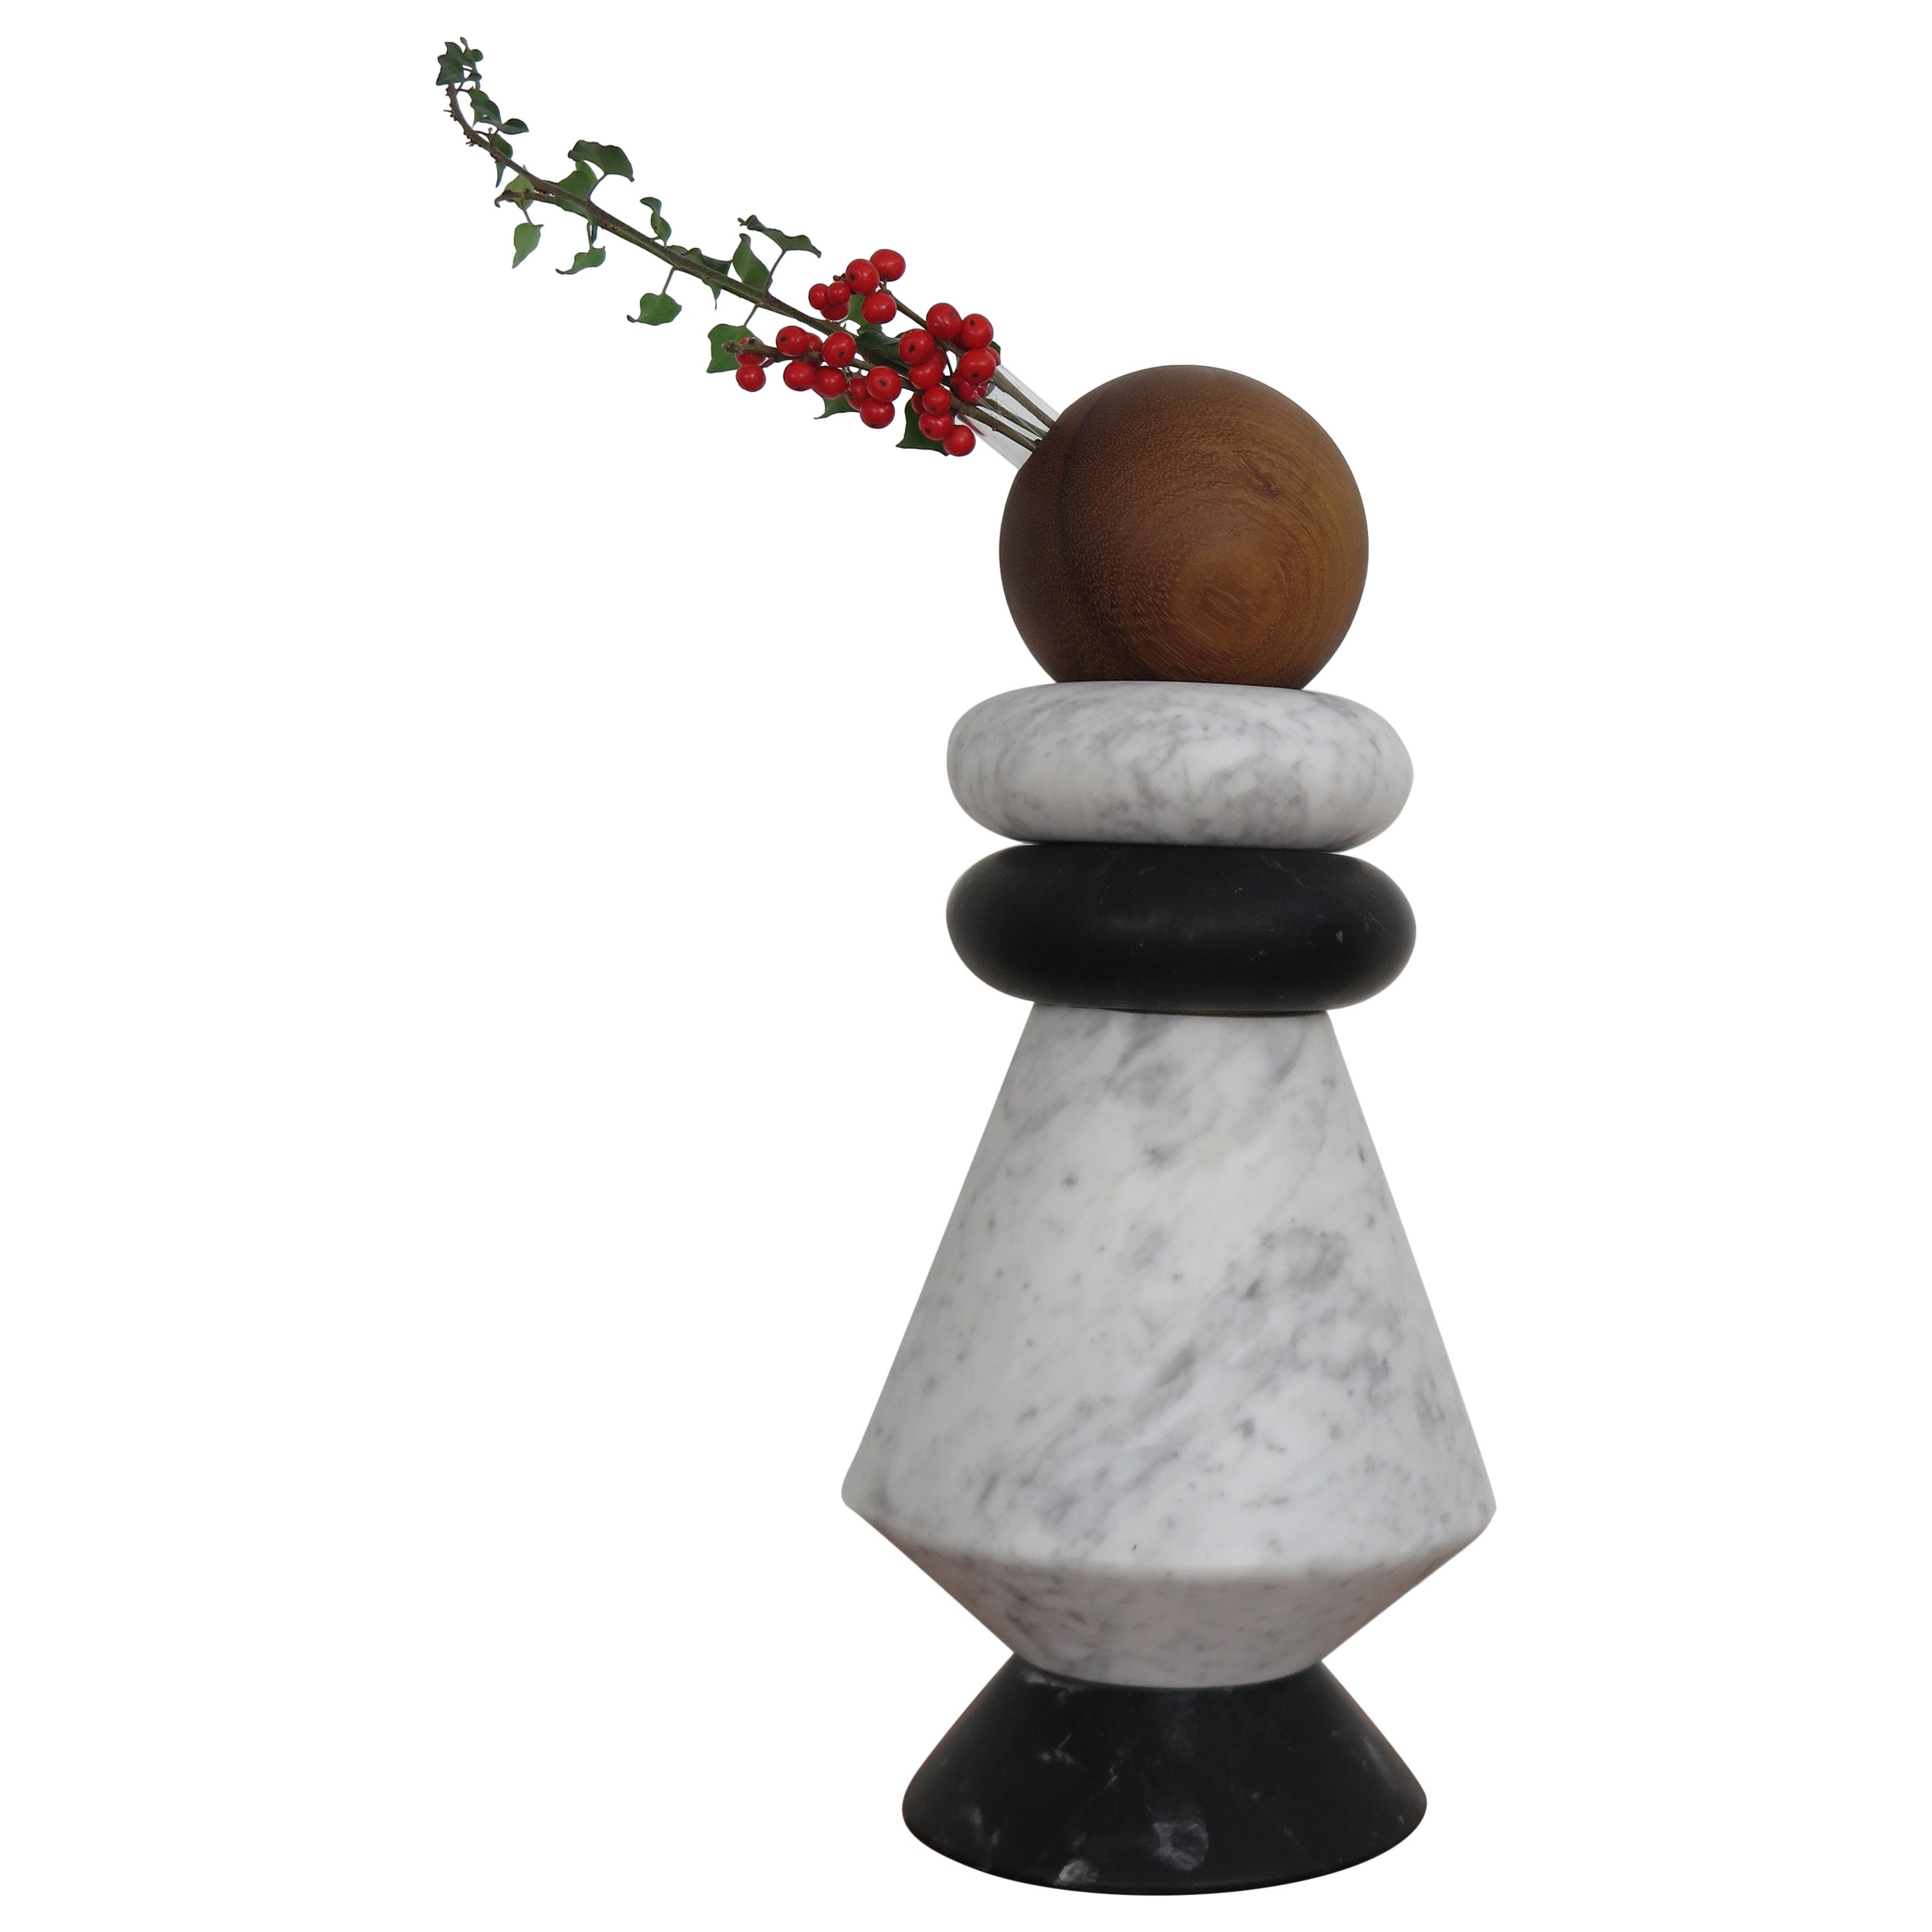 Zeitgenössische Skulptur aus Marmor und Holz, Blumenvase "iTotem"